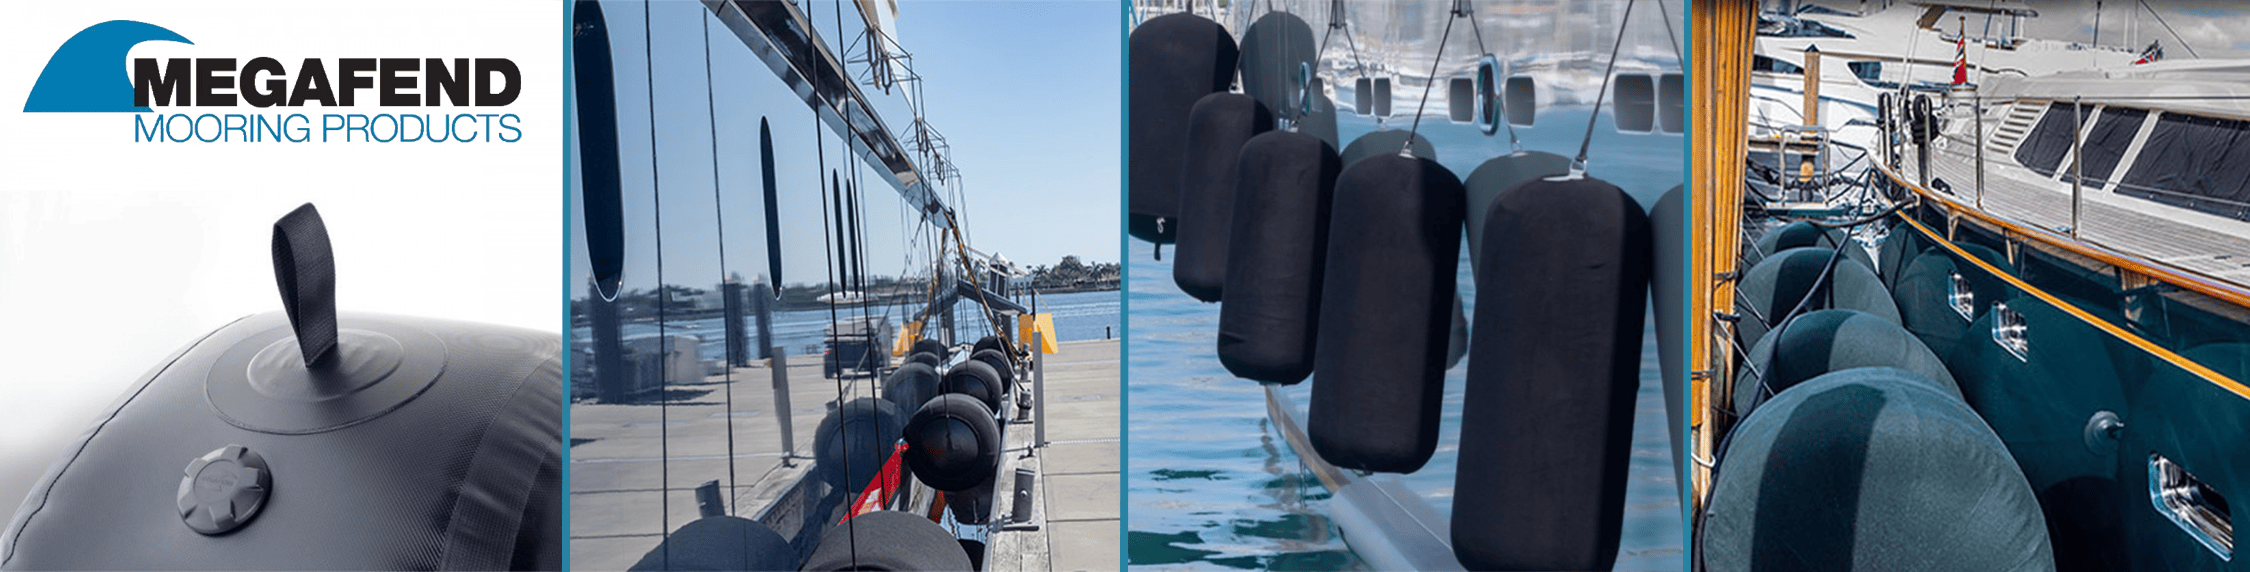 MEGAFEND Boat Fenders & Yacht Fenders | Marine Fenders